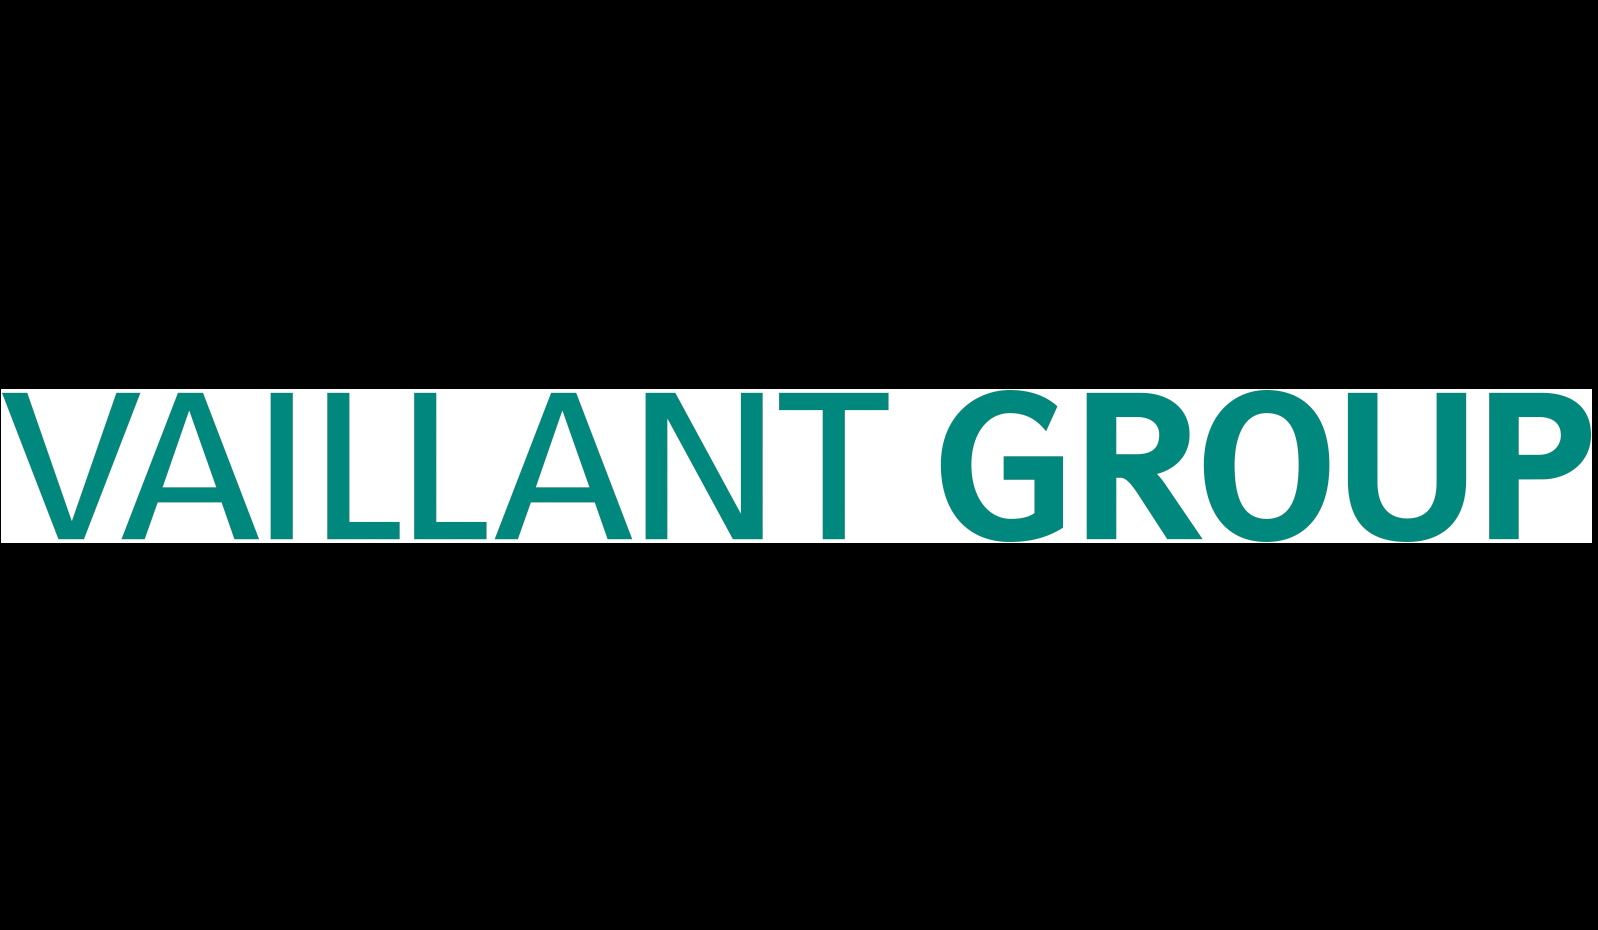 Vaillant Group Türkiye, eğitim programları ile 2022'de de 4 bine yakın iş ortağına ulaştı